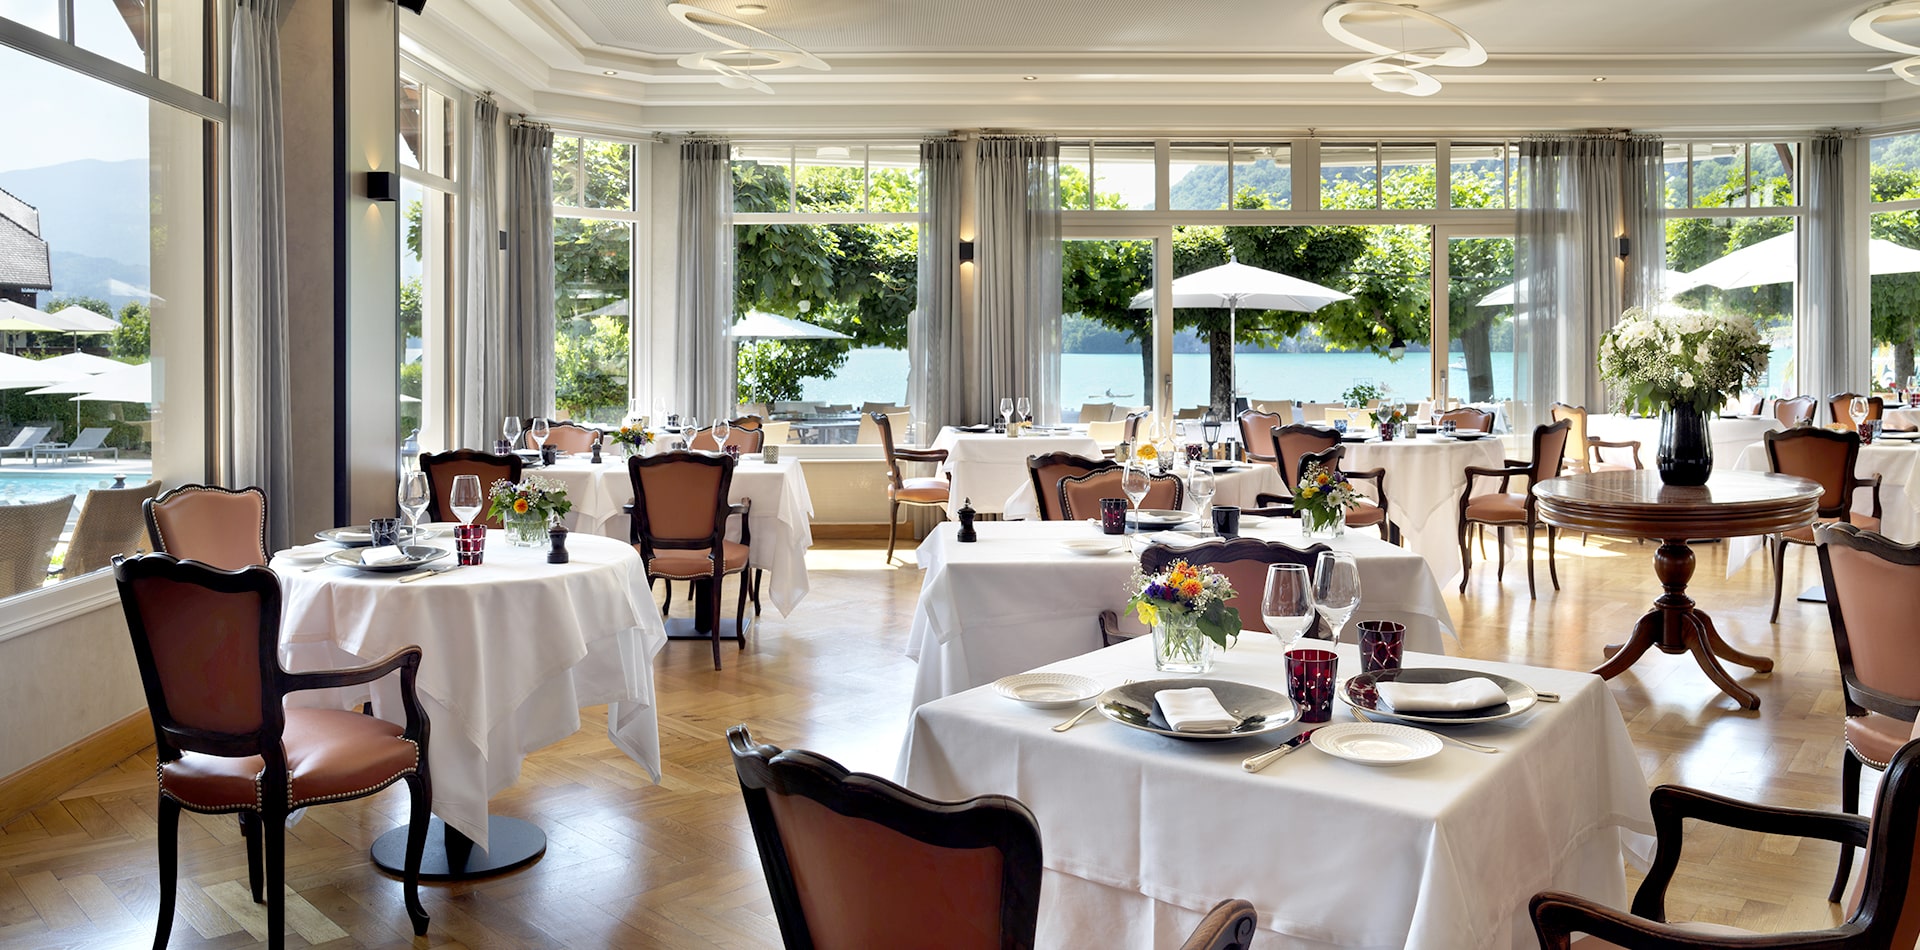 Découvrez pour vos séminaires en Haute Savoie, le restaurant Cottage Bise